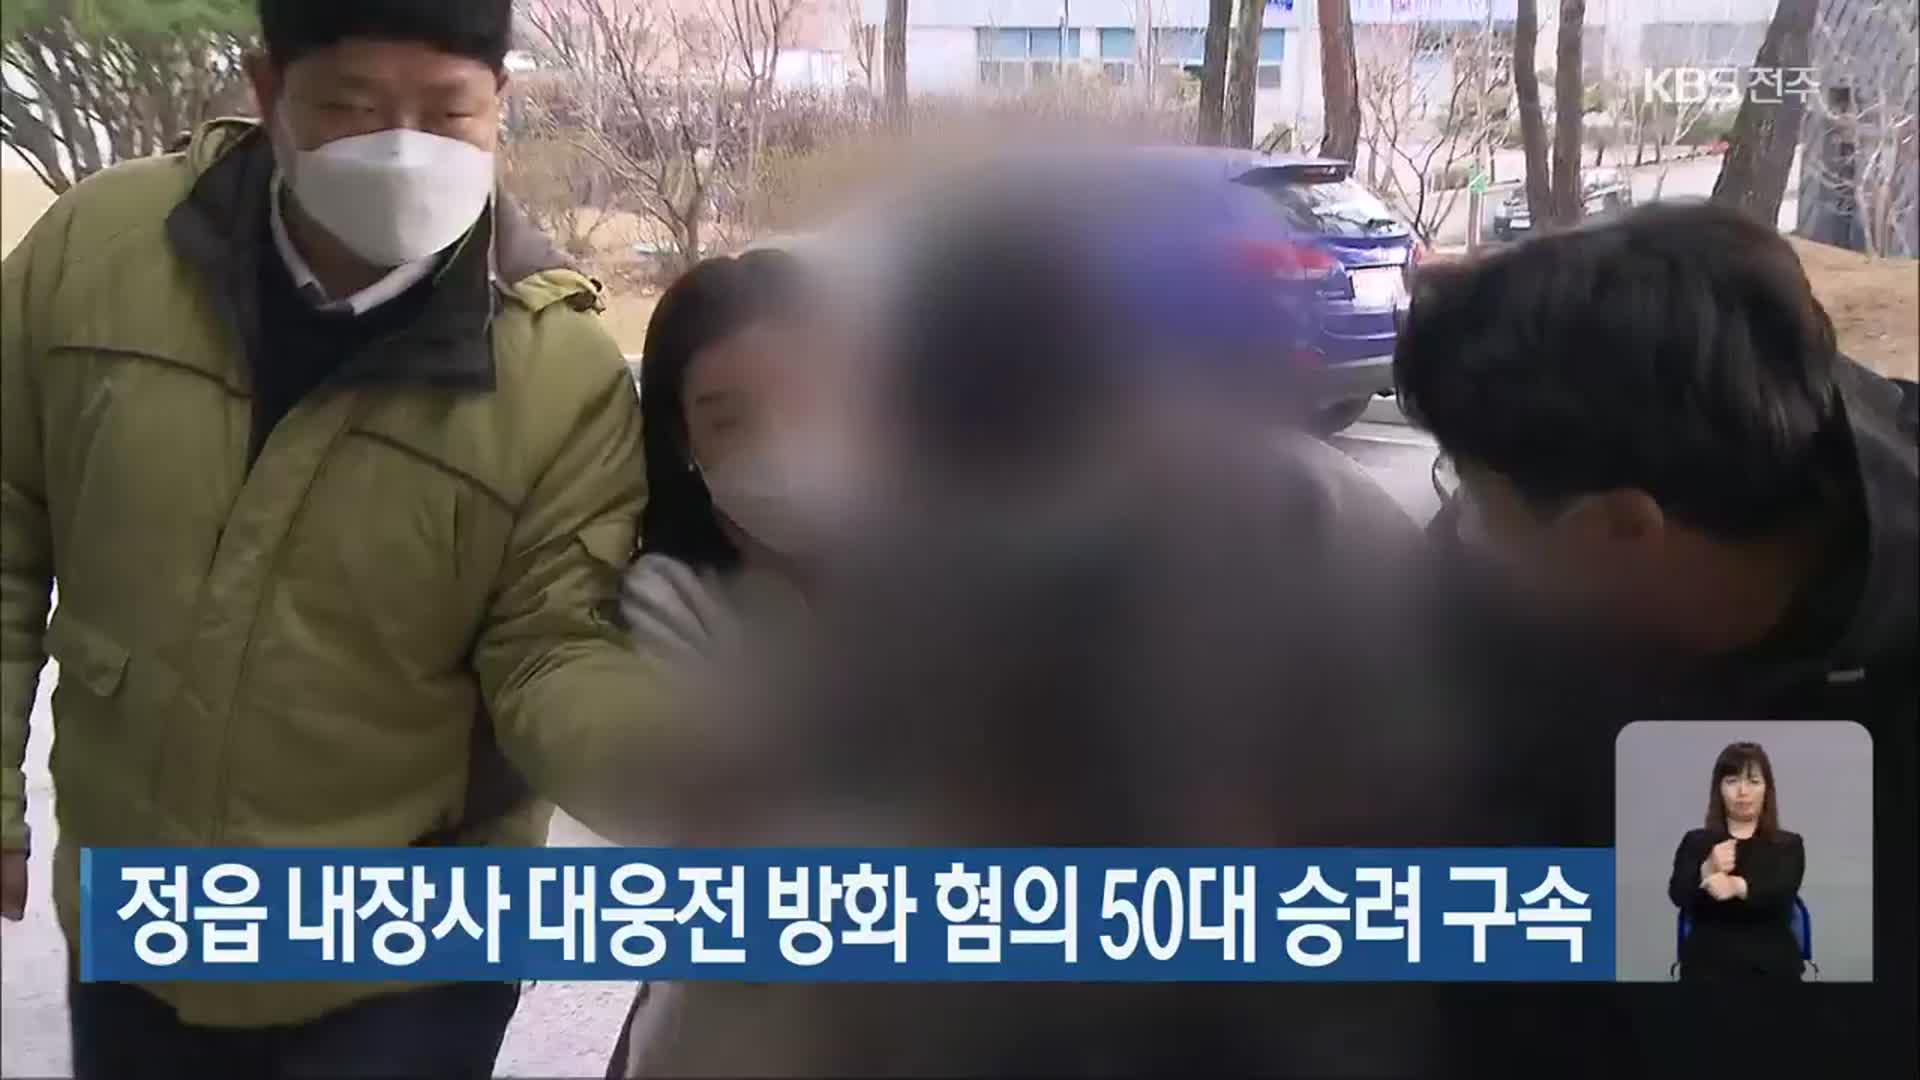 정읍 내장사 대웅전 방화 혐의 50대 승려 구속